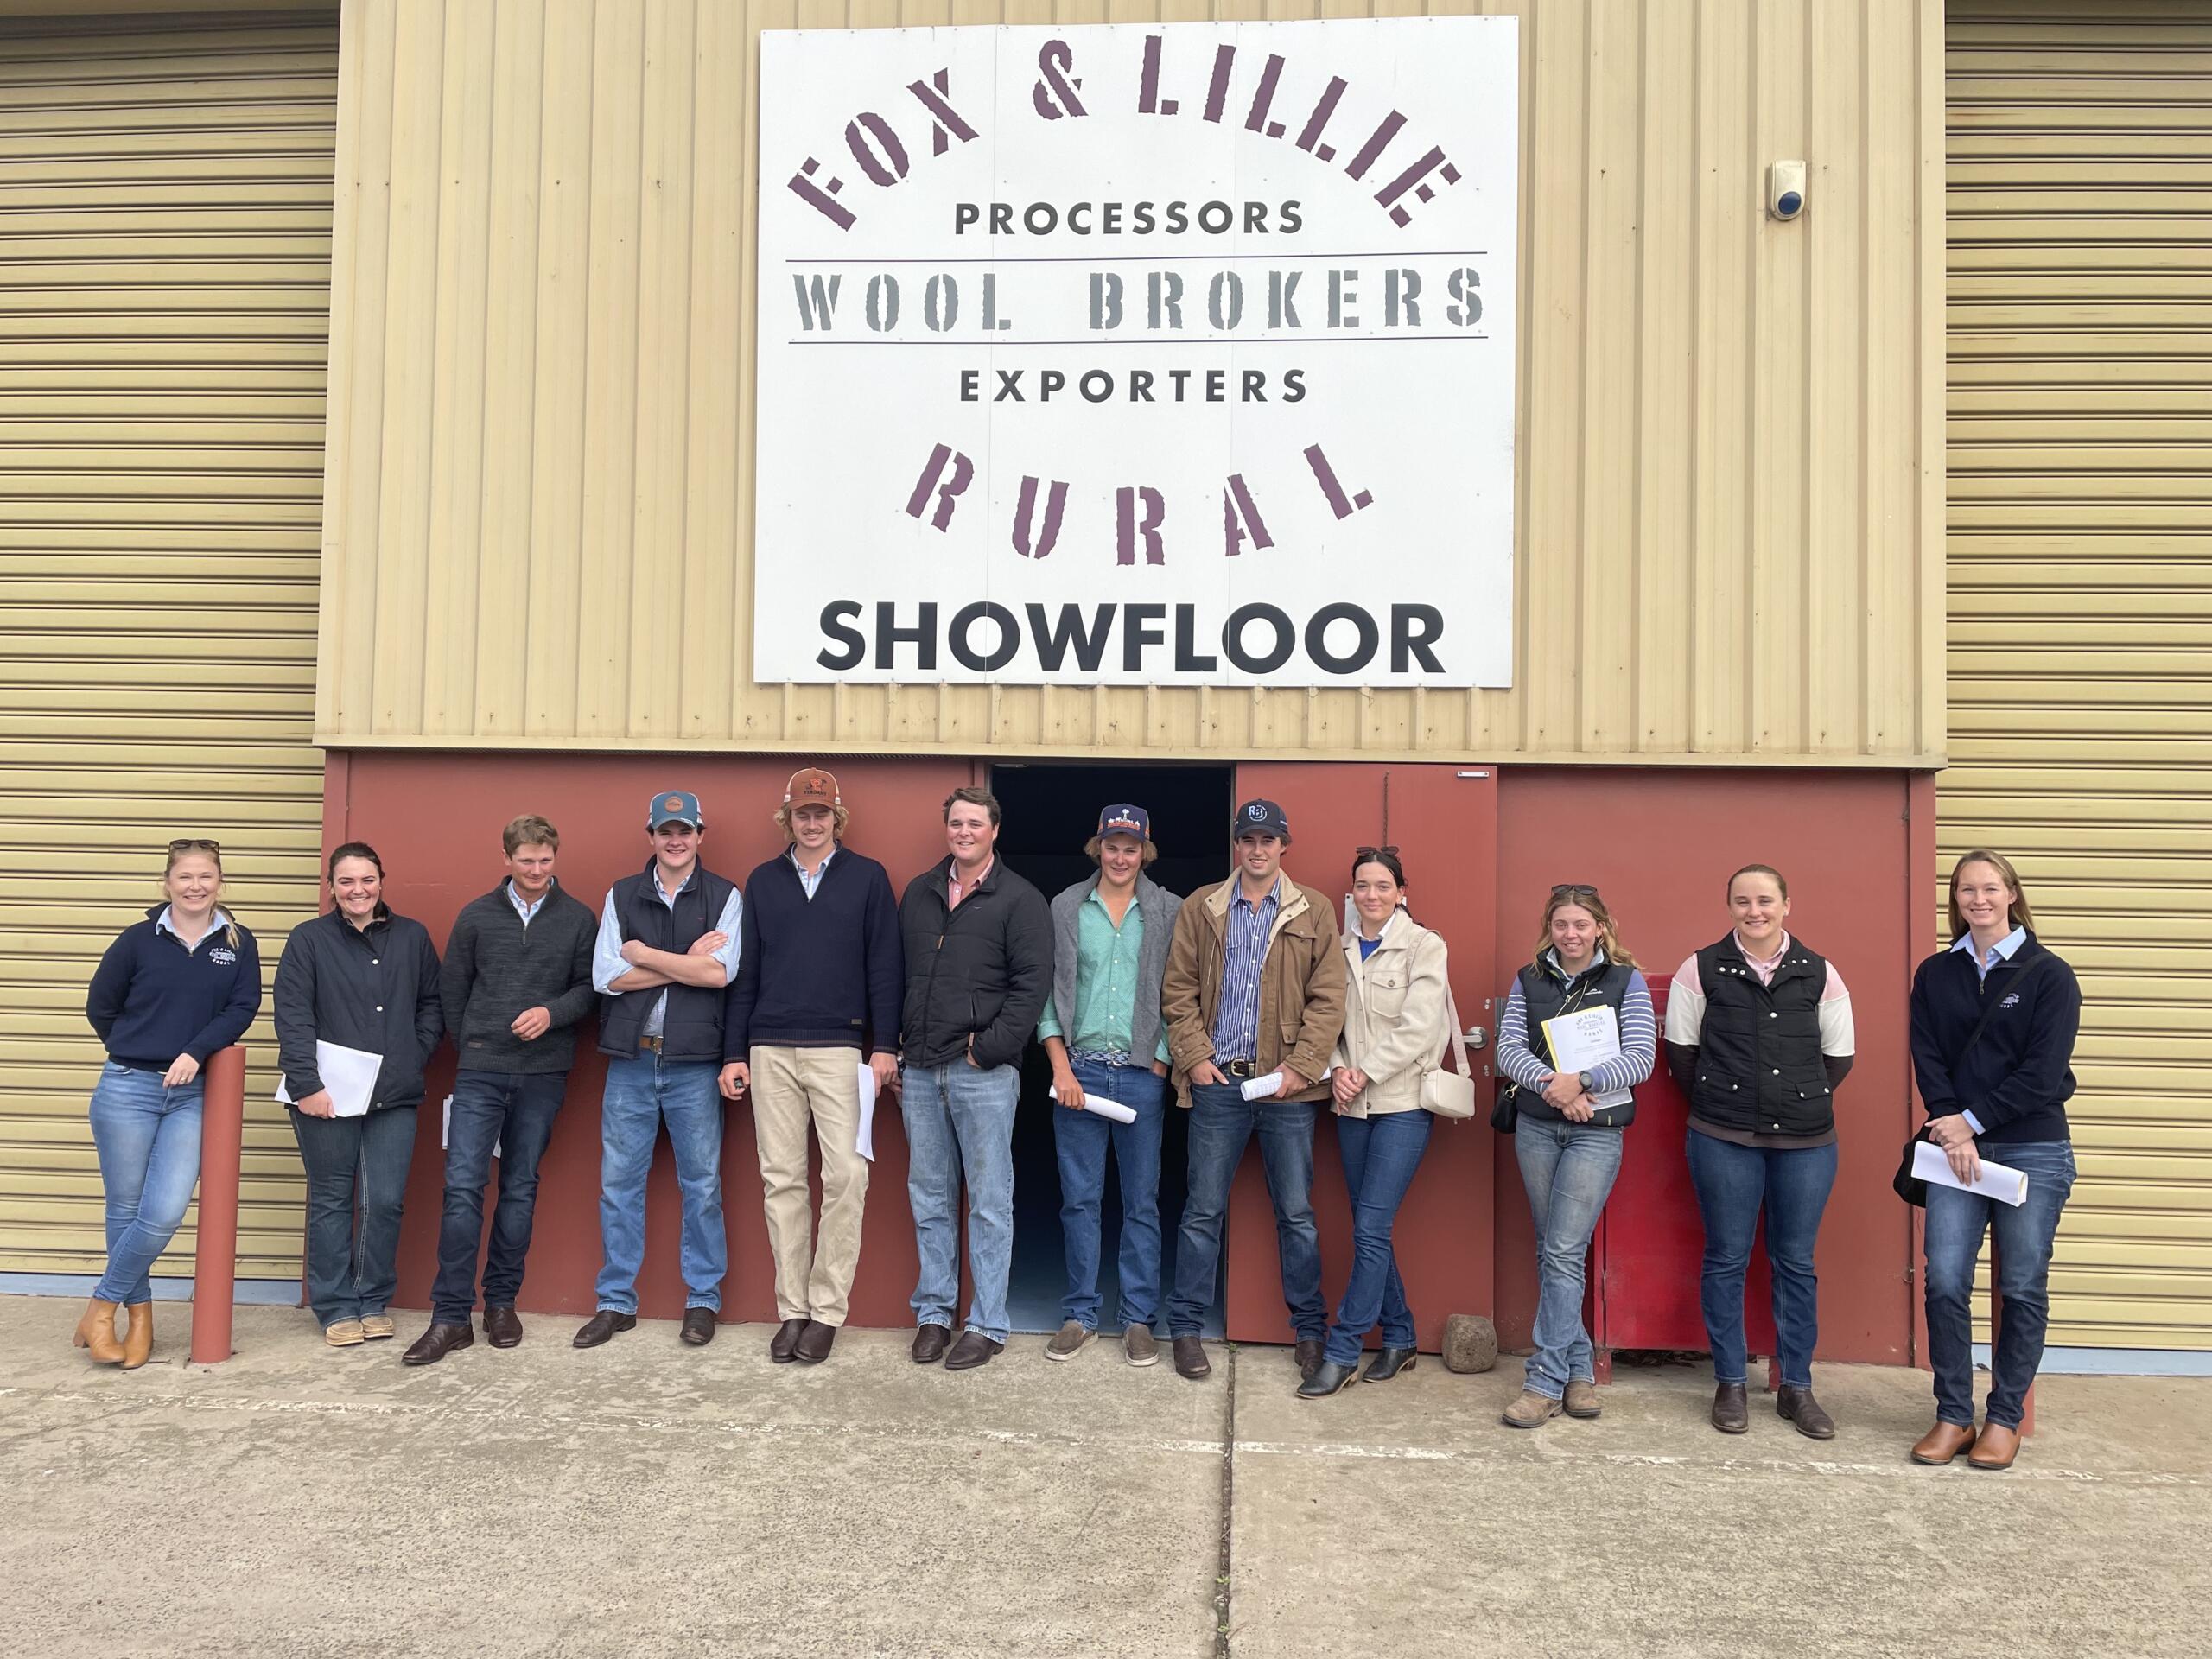 Fox & Lillie Rural Showfloor